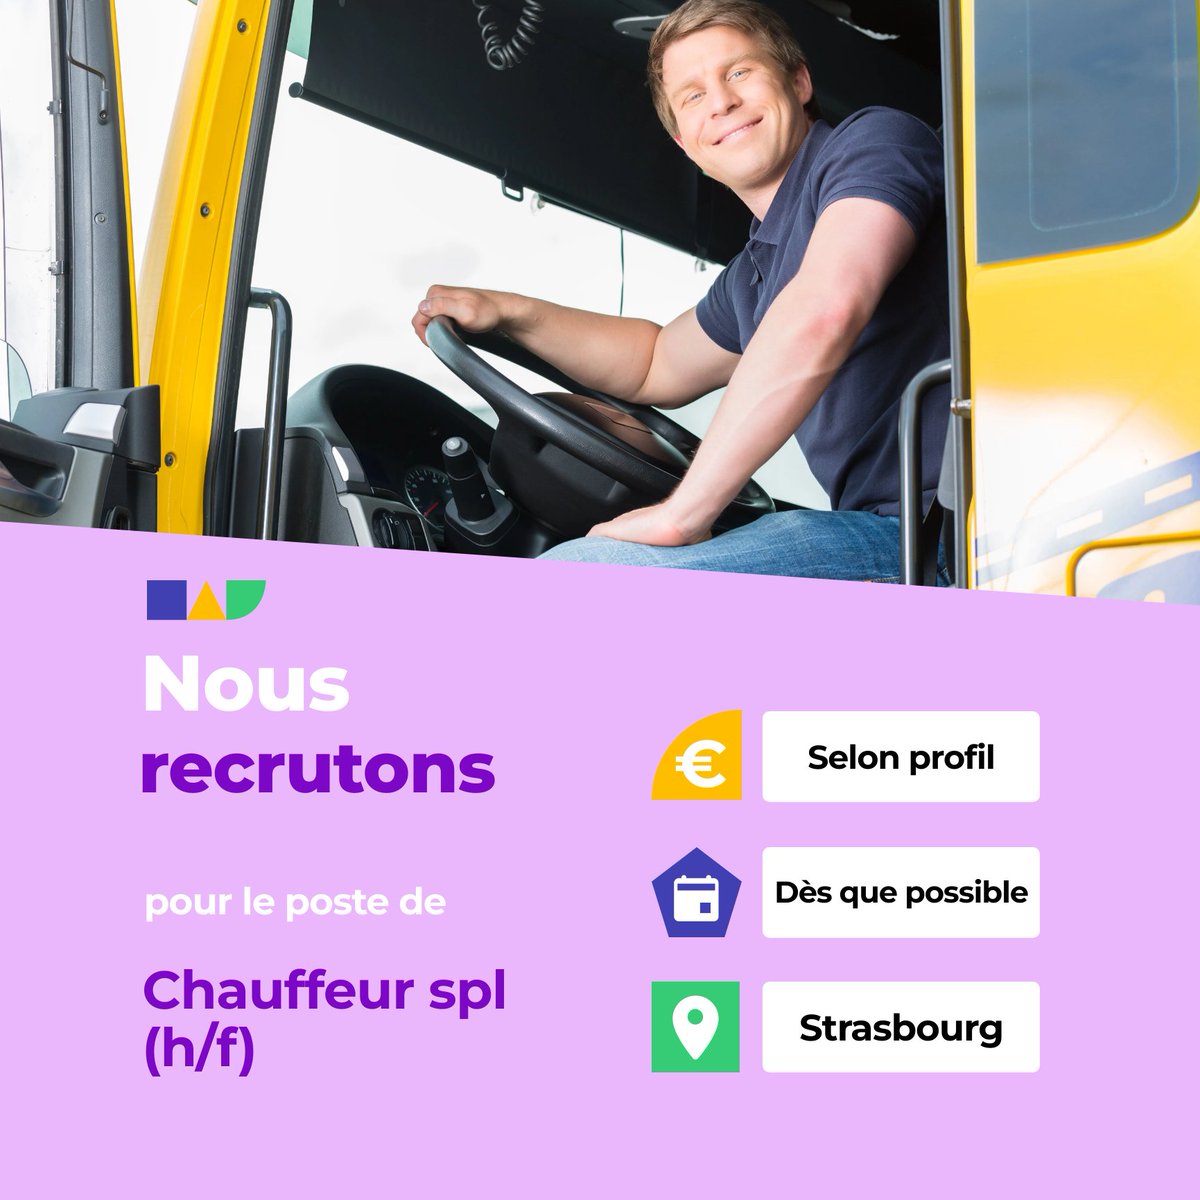 🛎️ Nouvelle offre d'emploi : Chauffeur spl (h/f) 🌎 Strasbourg (67100) 📅 Démarrage dans les 7 prochains jours 👉 Plus d'infos : jobs.iziwork.com/fr/offre-emplo… #recrutement #intérim #emploi #OffreEmploi #job #iziwork